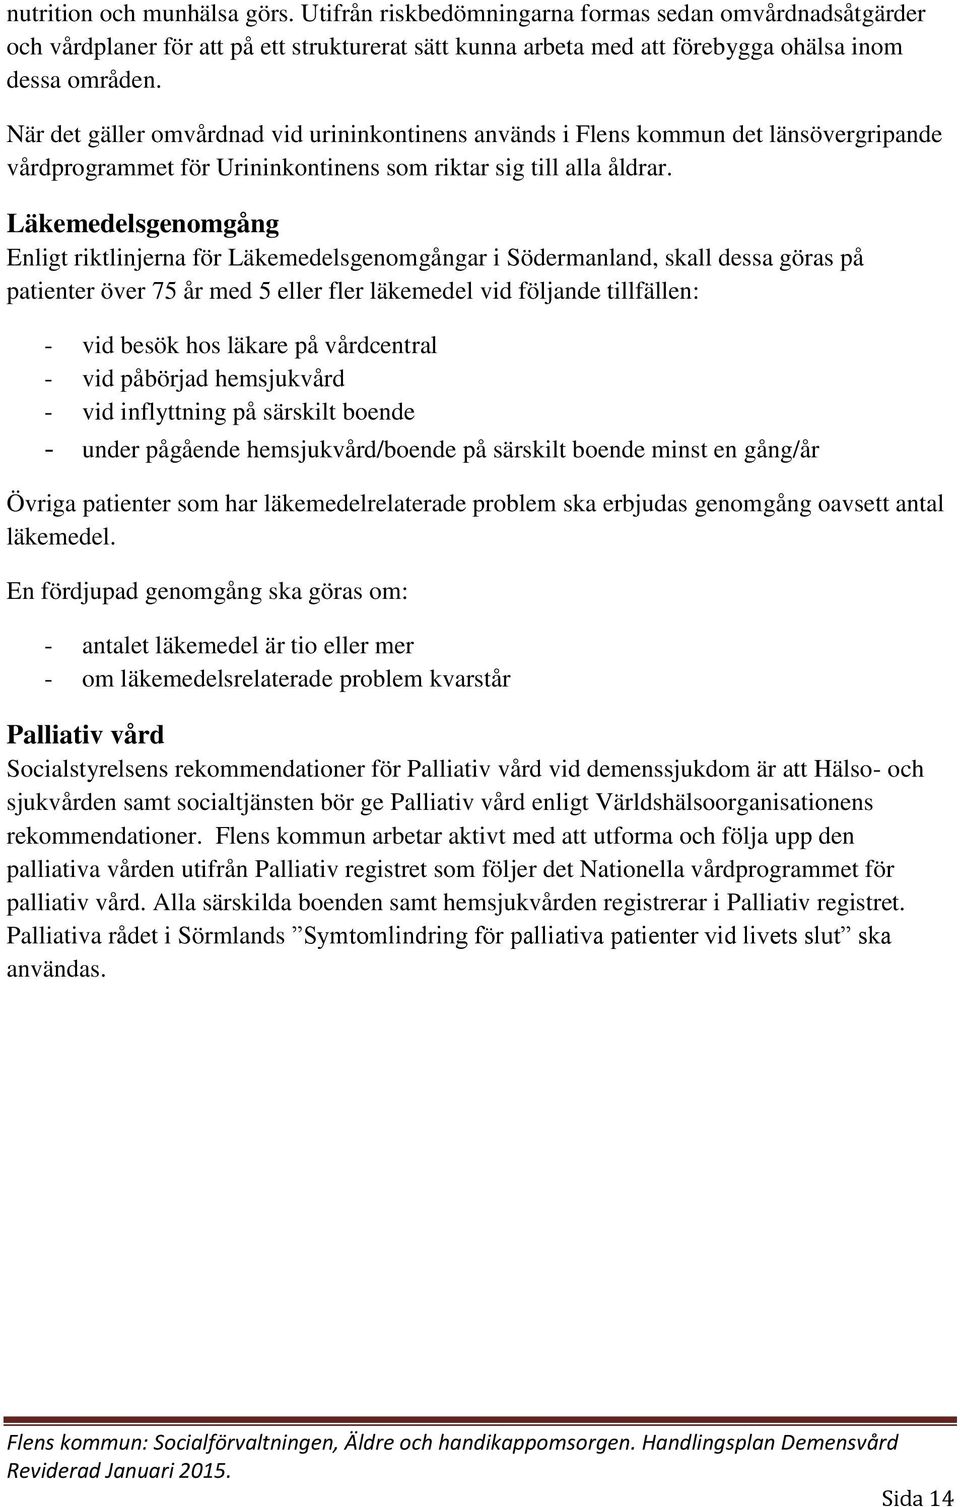 Läkemedelsgenomgång Enligt riktlinjerna för Läkemedelsgenomgångar i Södermanland, skall dessa göras på patienter över 75 år med 5 eller fler läkemedel vid följande tillfällen: - vid besök hos läkare